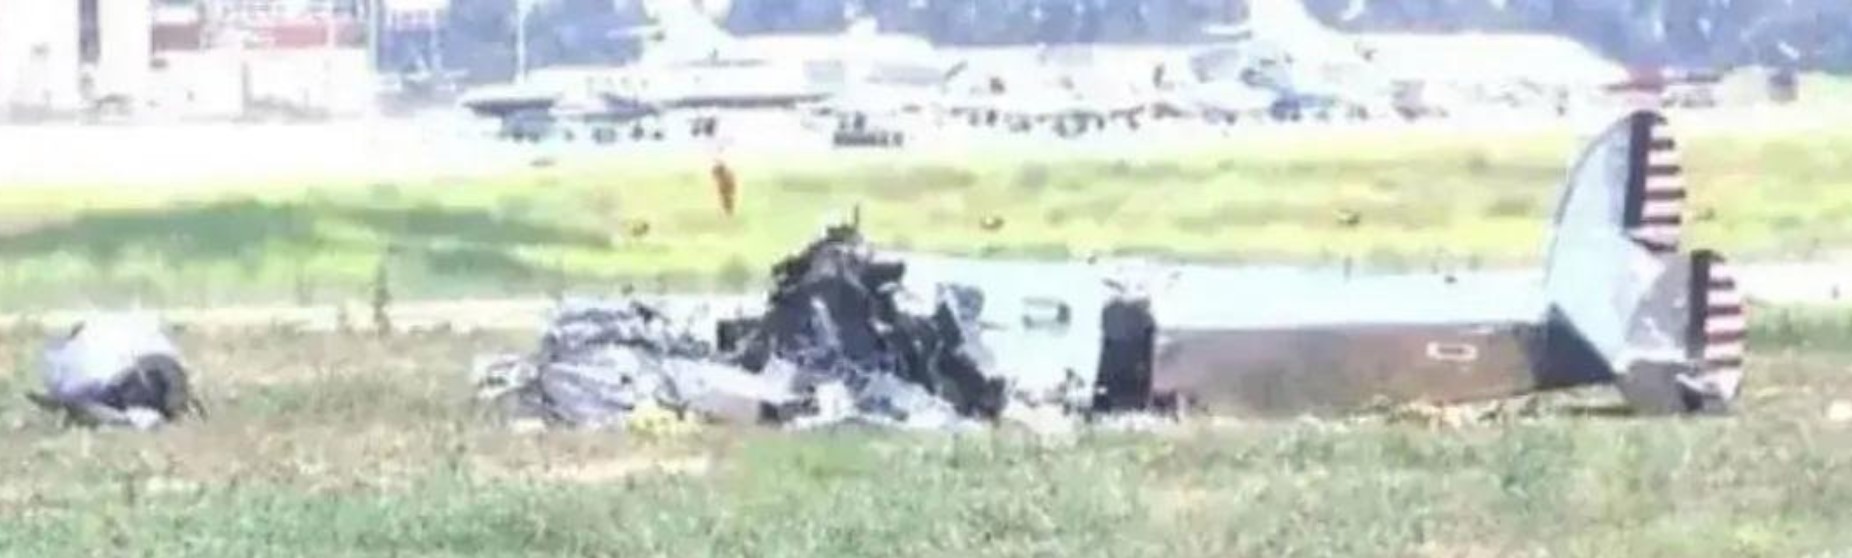 美国爱达荷州两架农用飞机相撞 致1死1伤